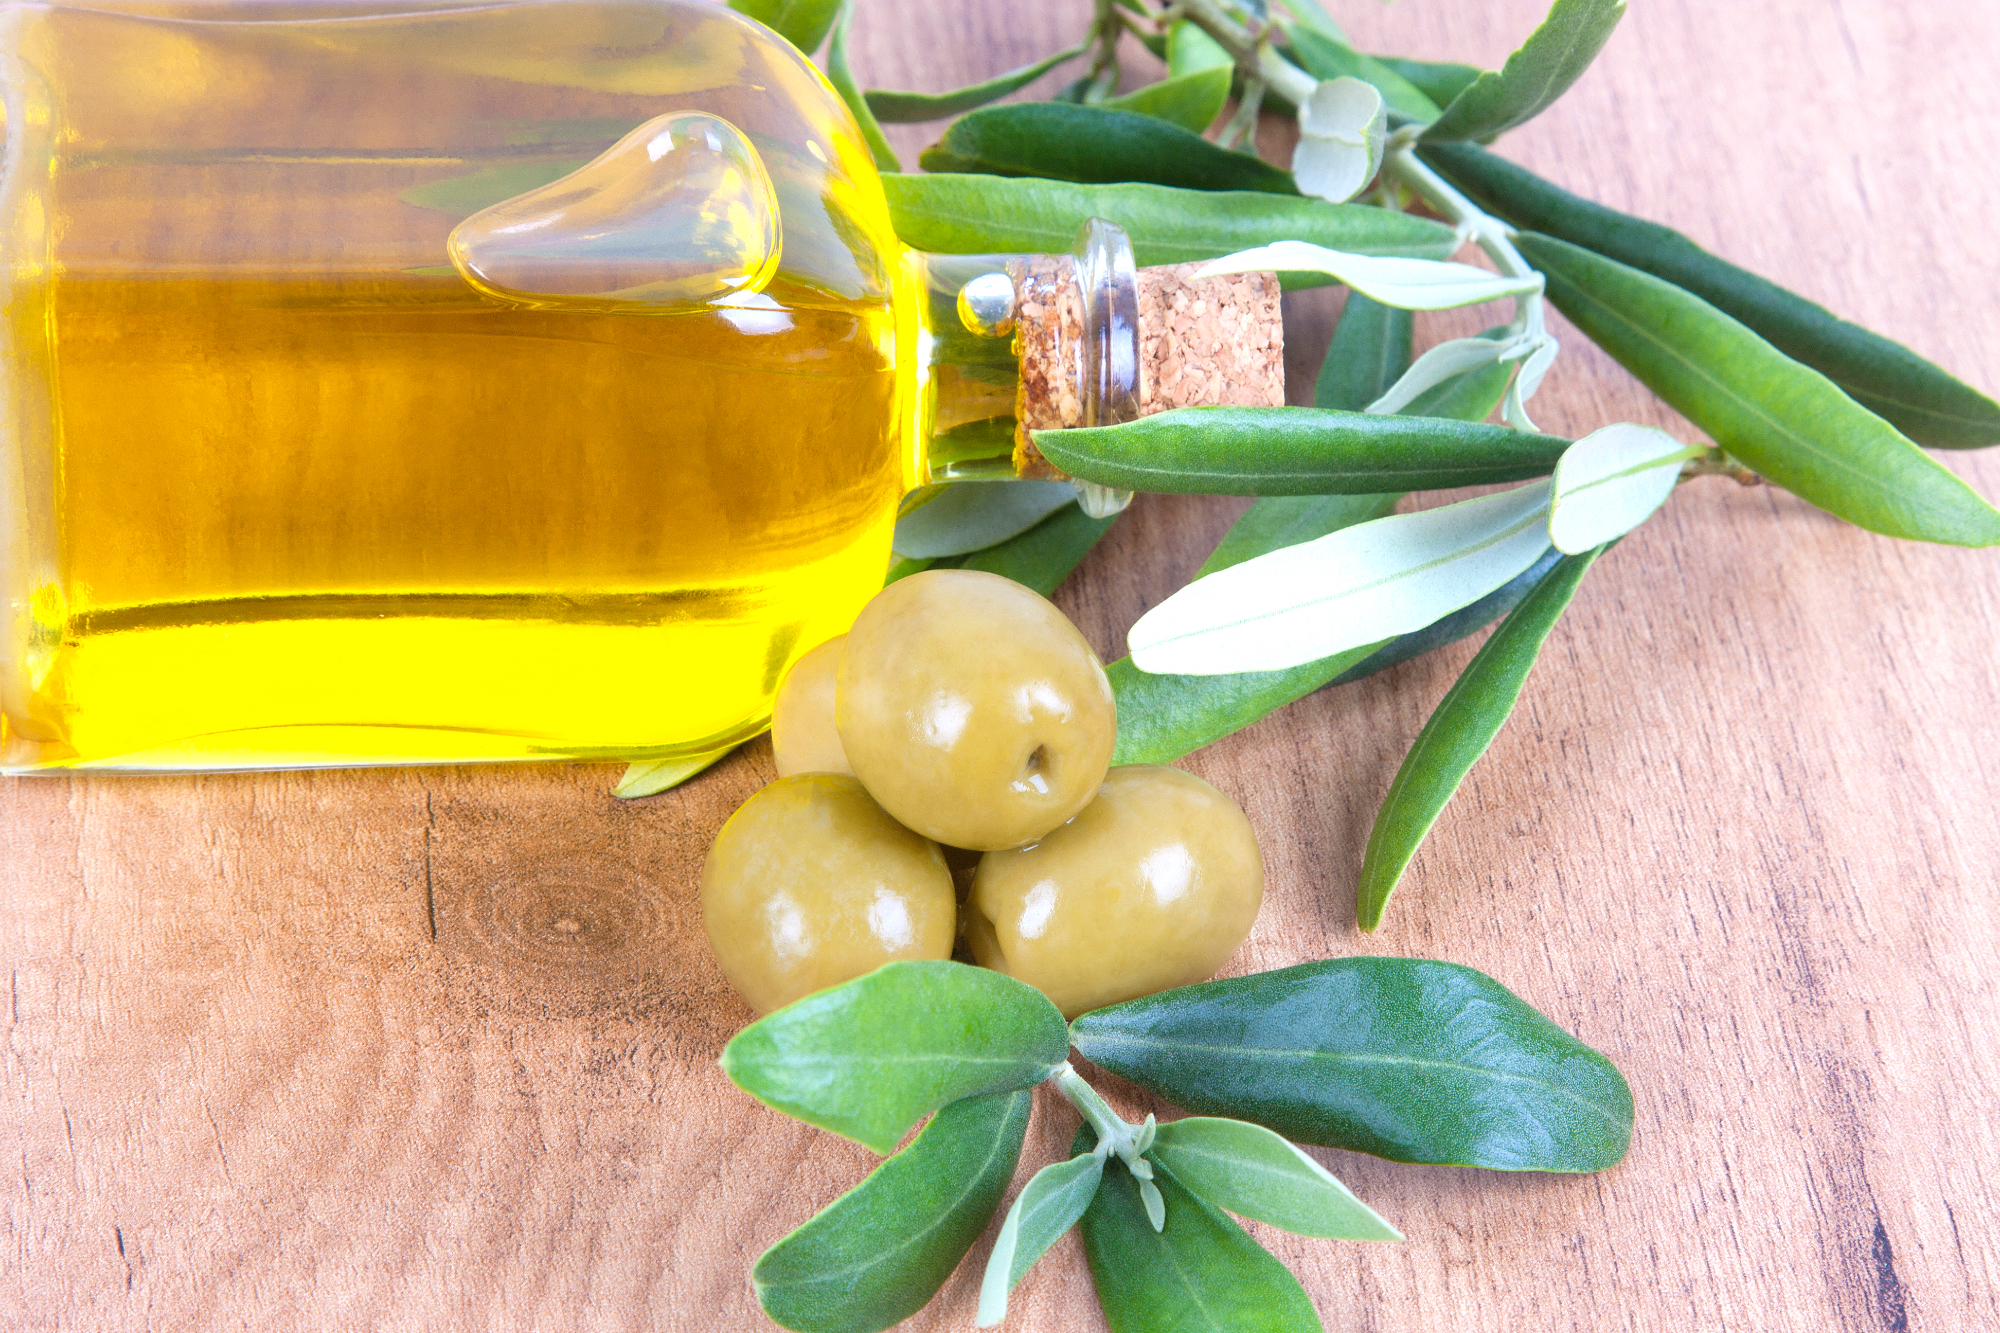 Olivno olje v kuhinji pride res prav